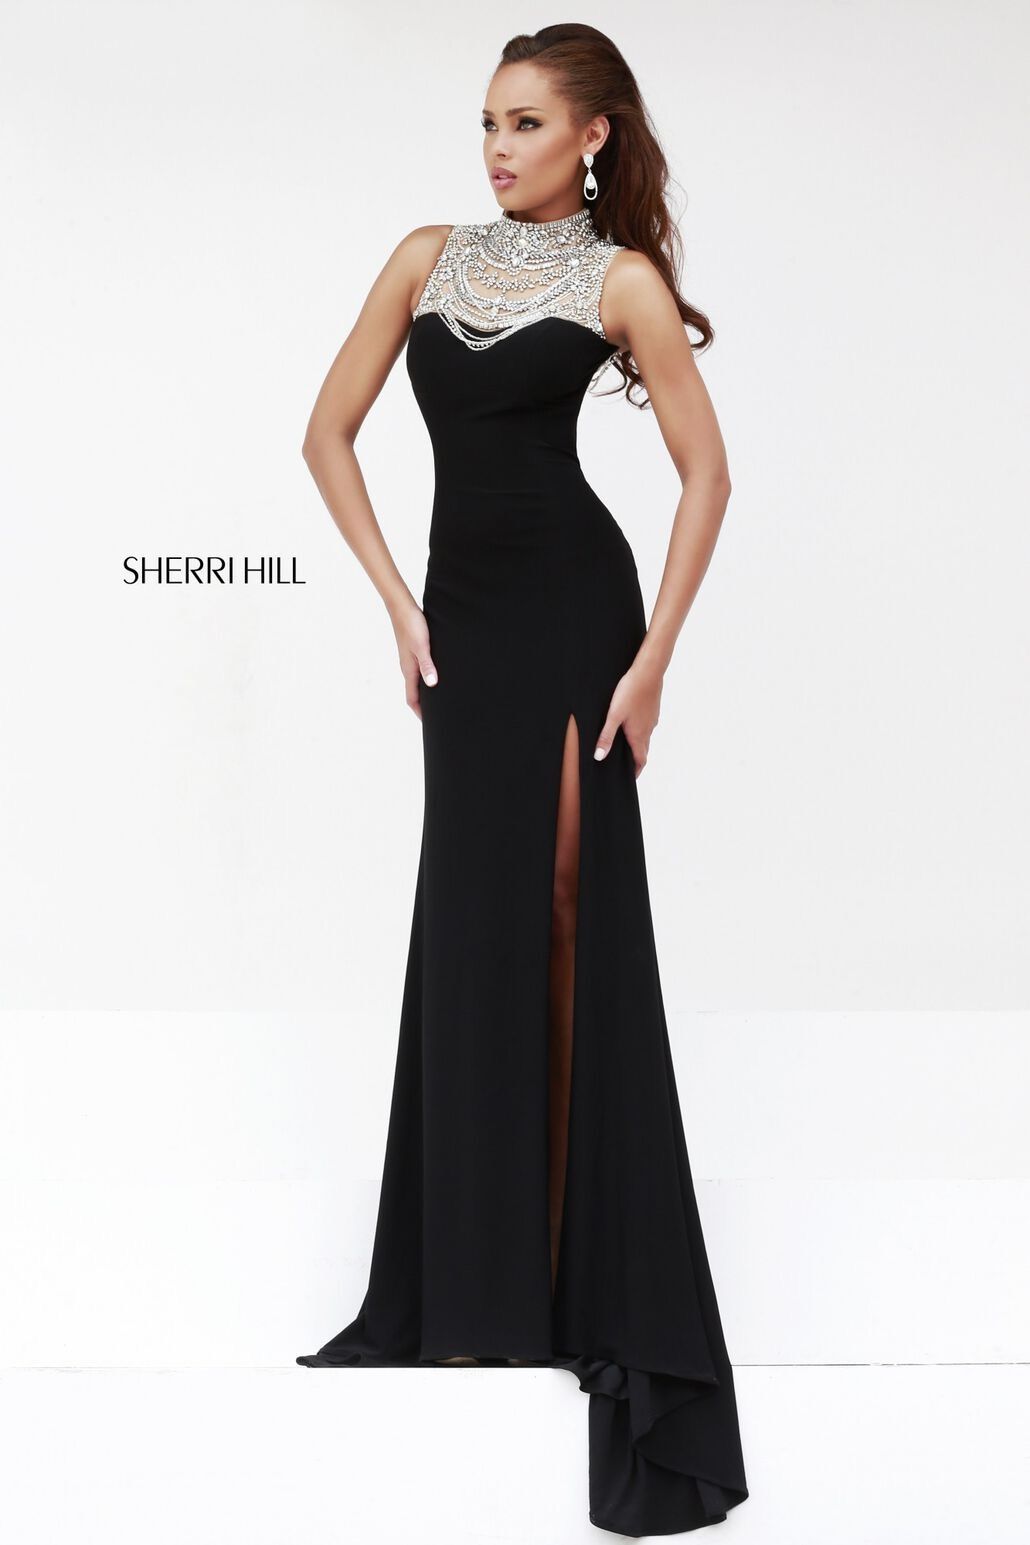 Style 21355 Sherri Hill Size 4 Prom High Neck Velvet Black Mermaid Dress on Queenly